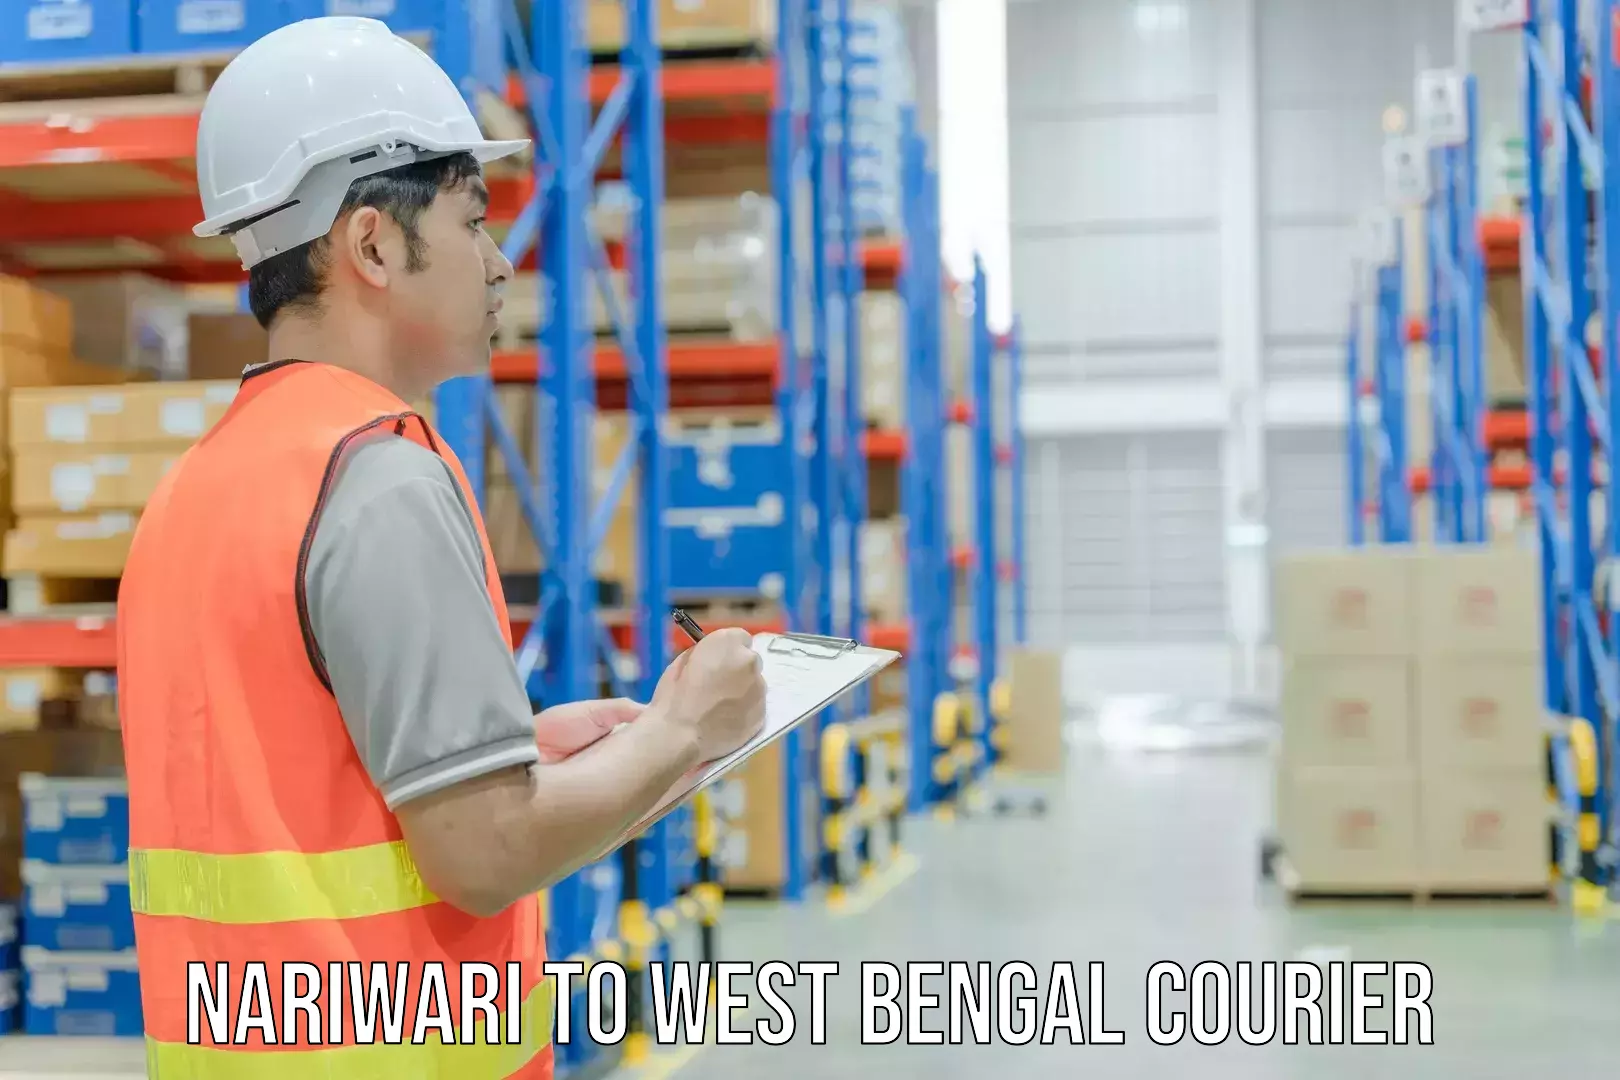 Digital courier platforms Nariwari to West Bengal